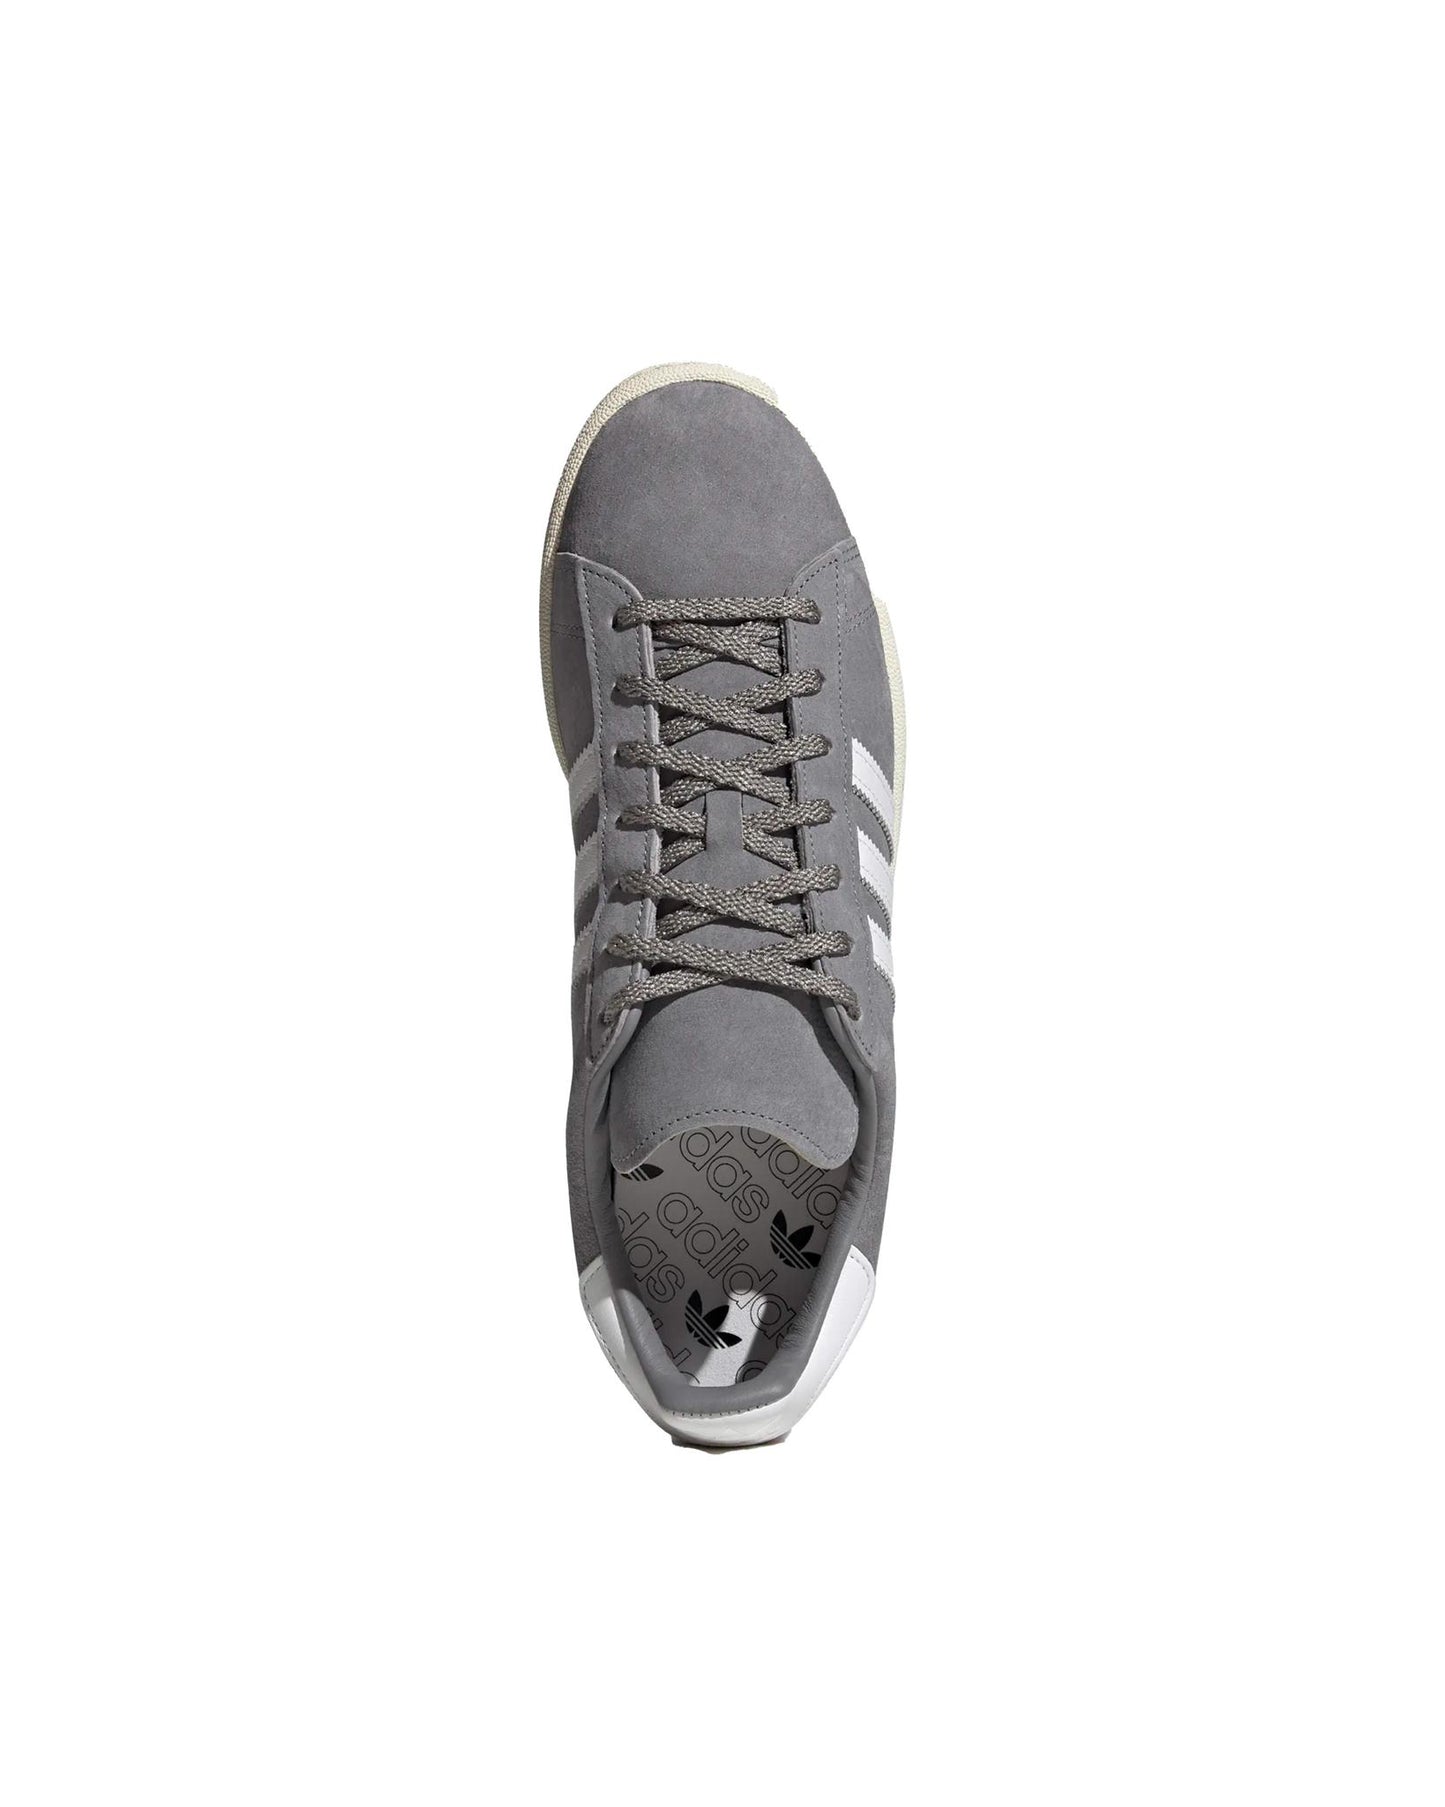 
                    
                      Adidas Campus 80s Shoes Grey
                    
                  